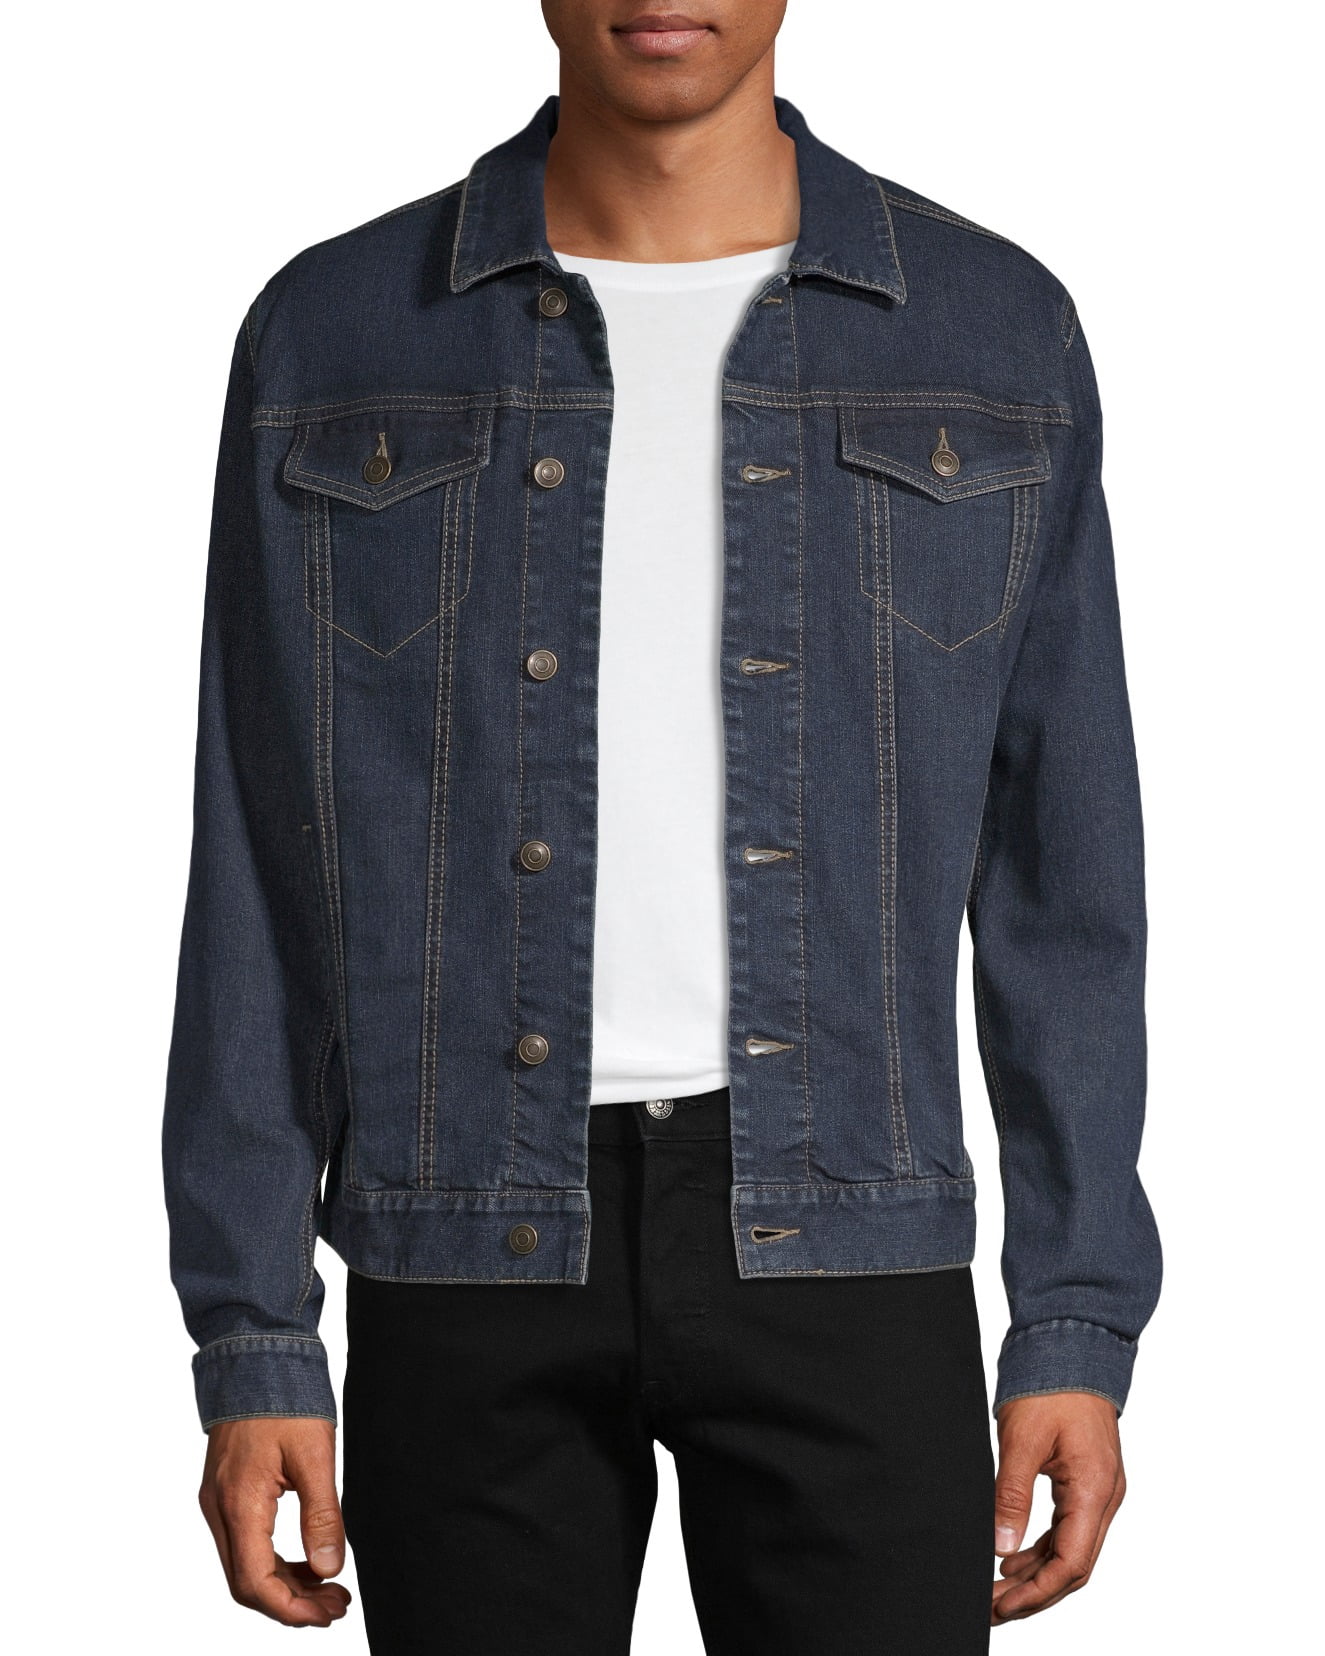 walmart jean jacket